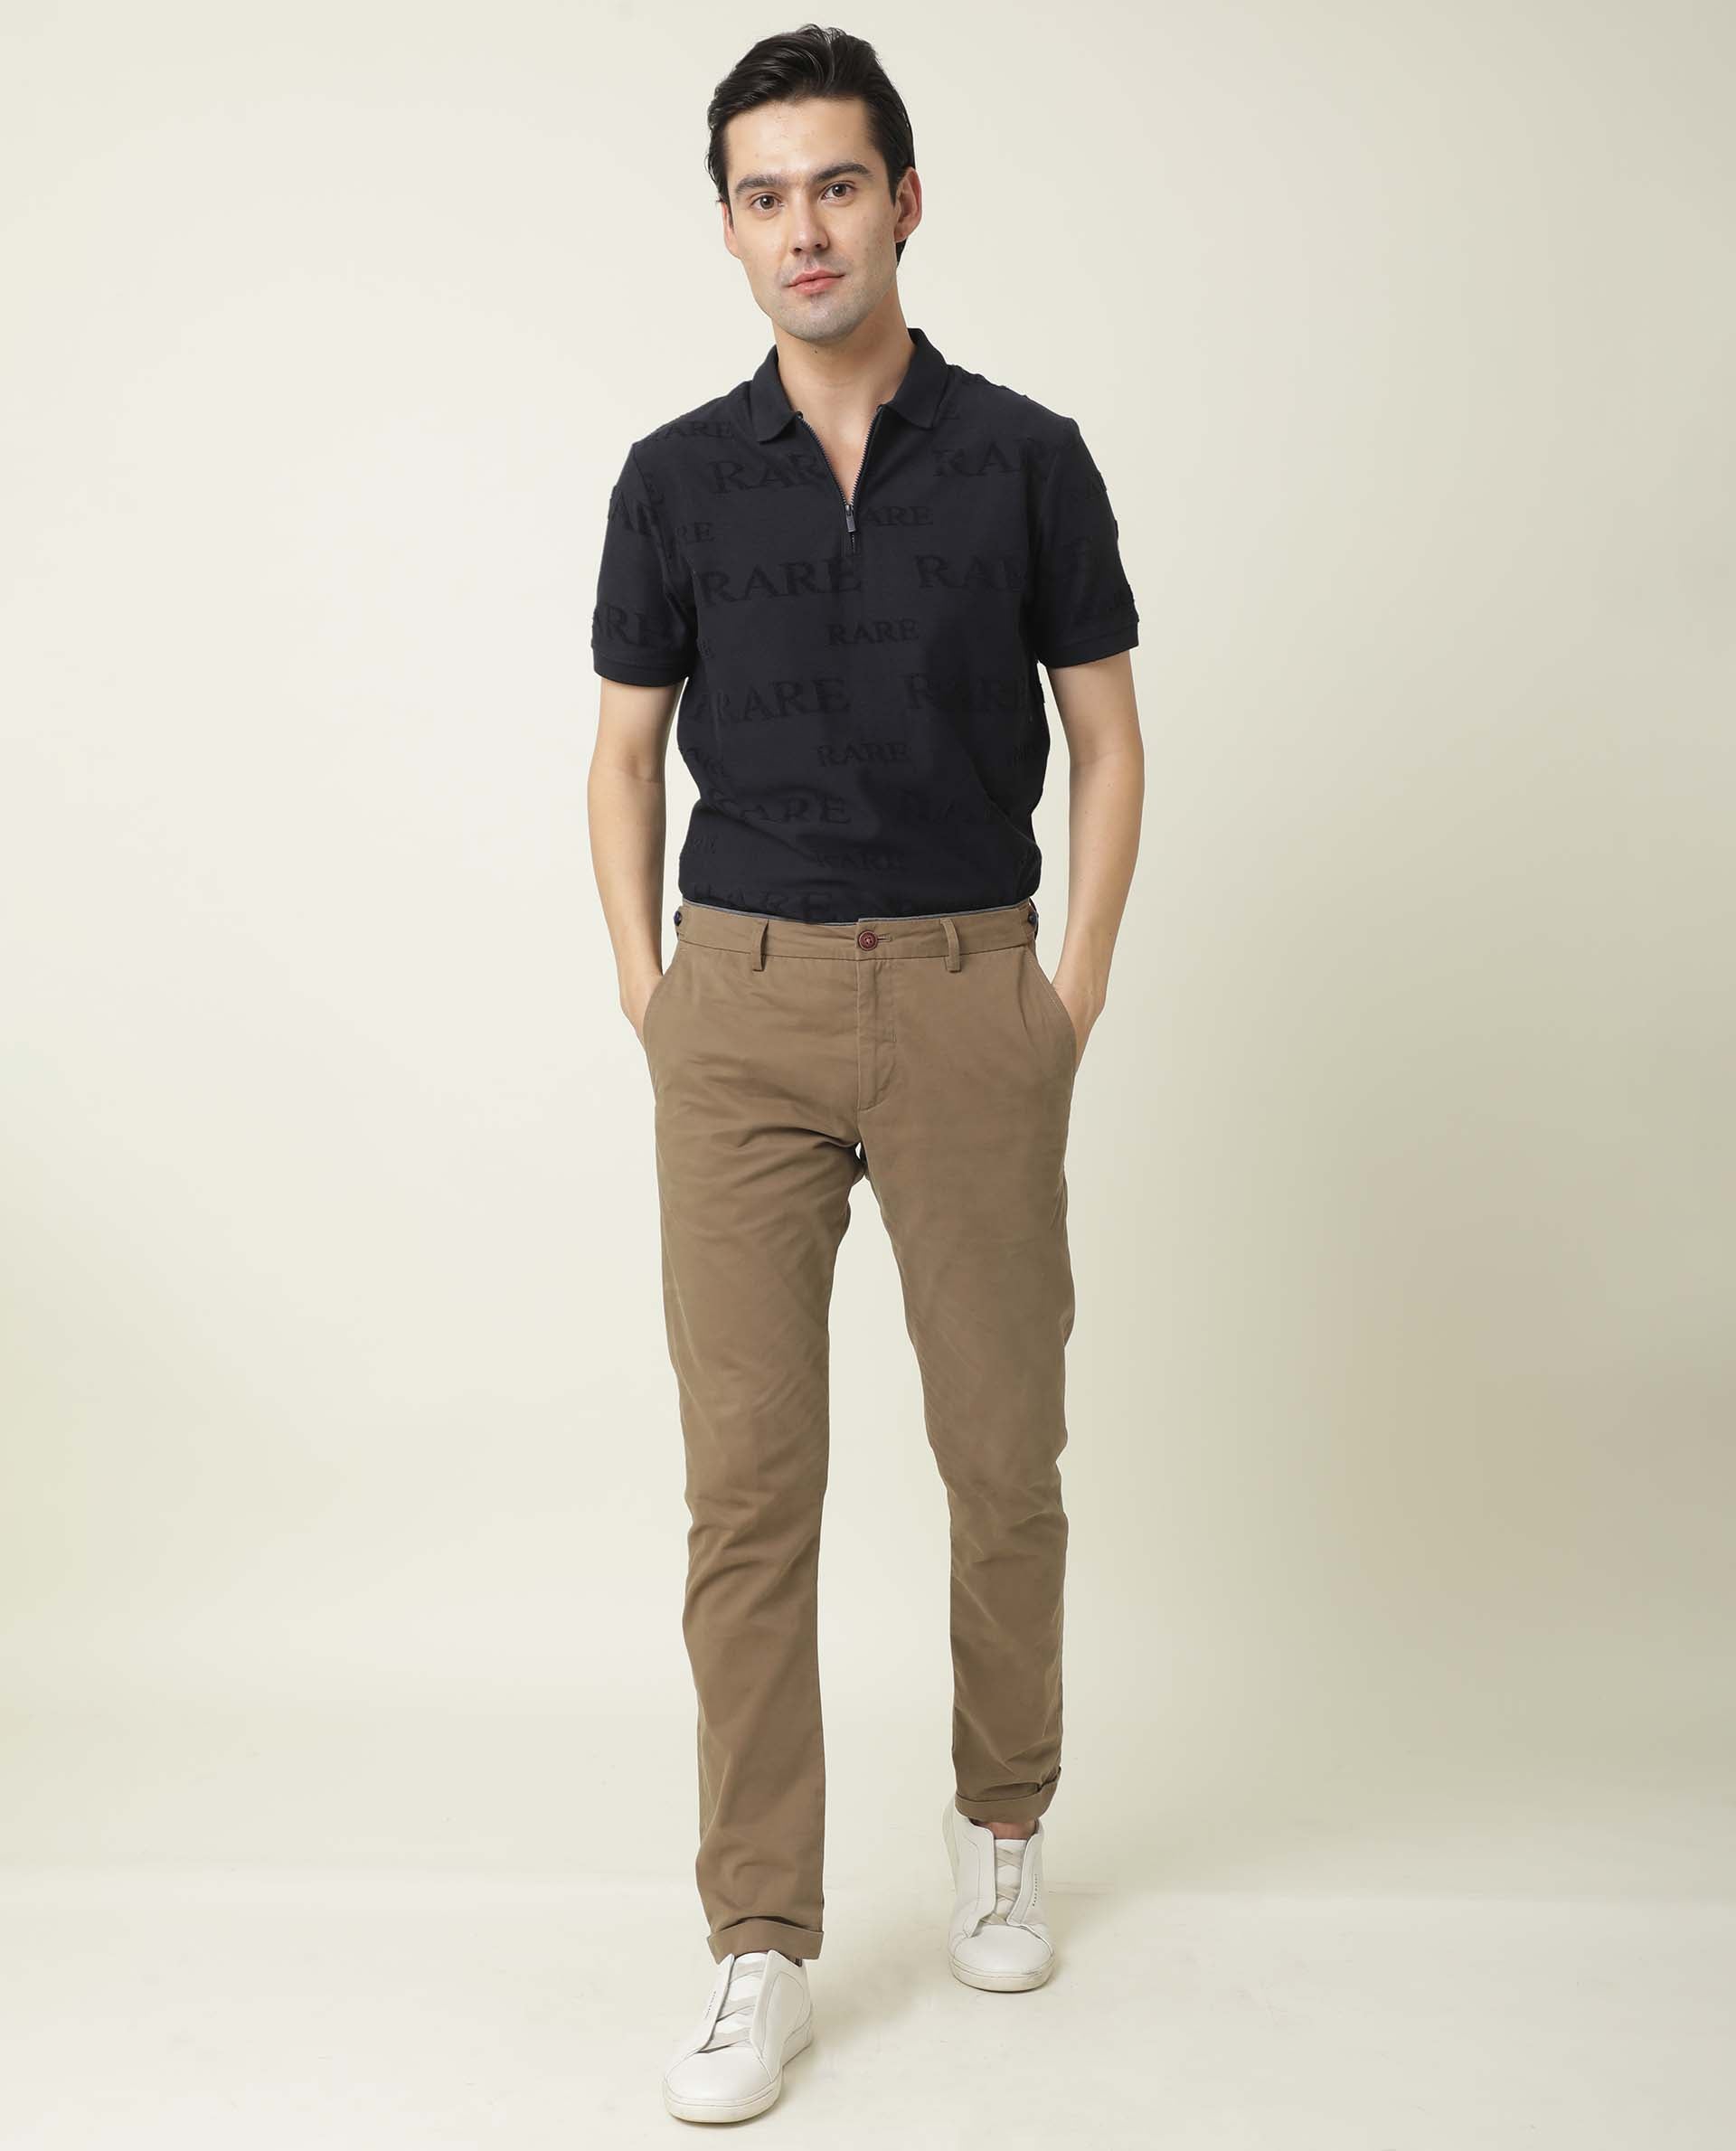 SREY Police Khaki  Police Khaki Combo Slim Fit Formal Trouser For Men